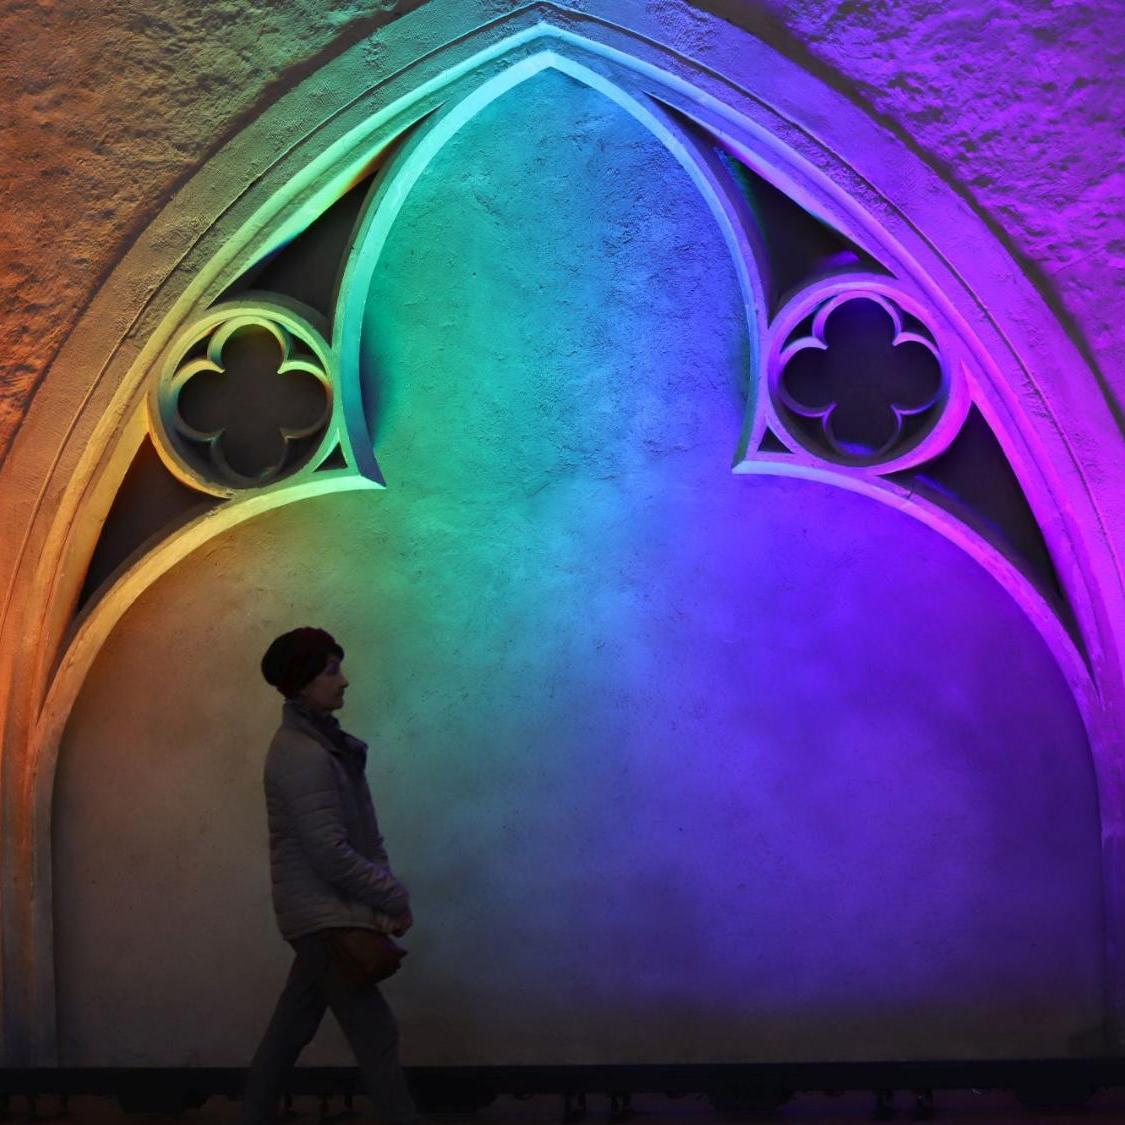 Das BIld zeigt eine Frau mit Mütze, die vor einem gotischen Bogen her geht. Der gotische Bogen ist in Regenbogenfarben angestrahlt.